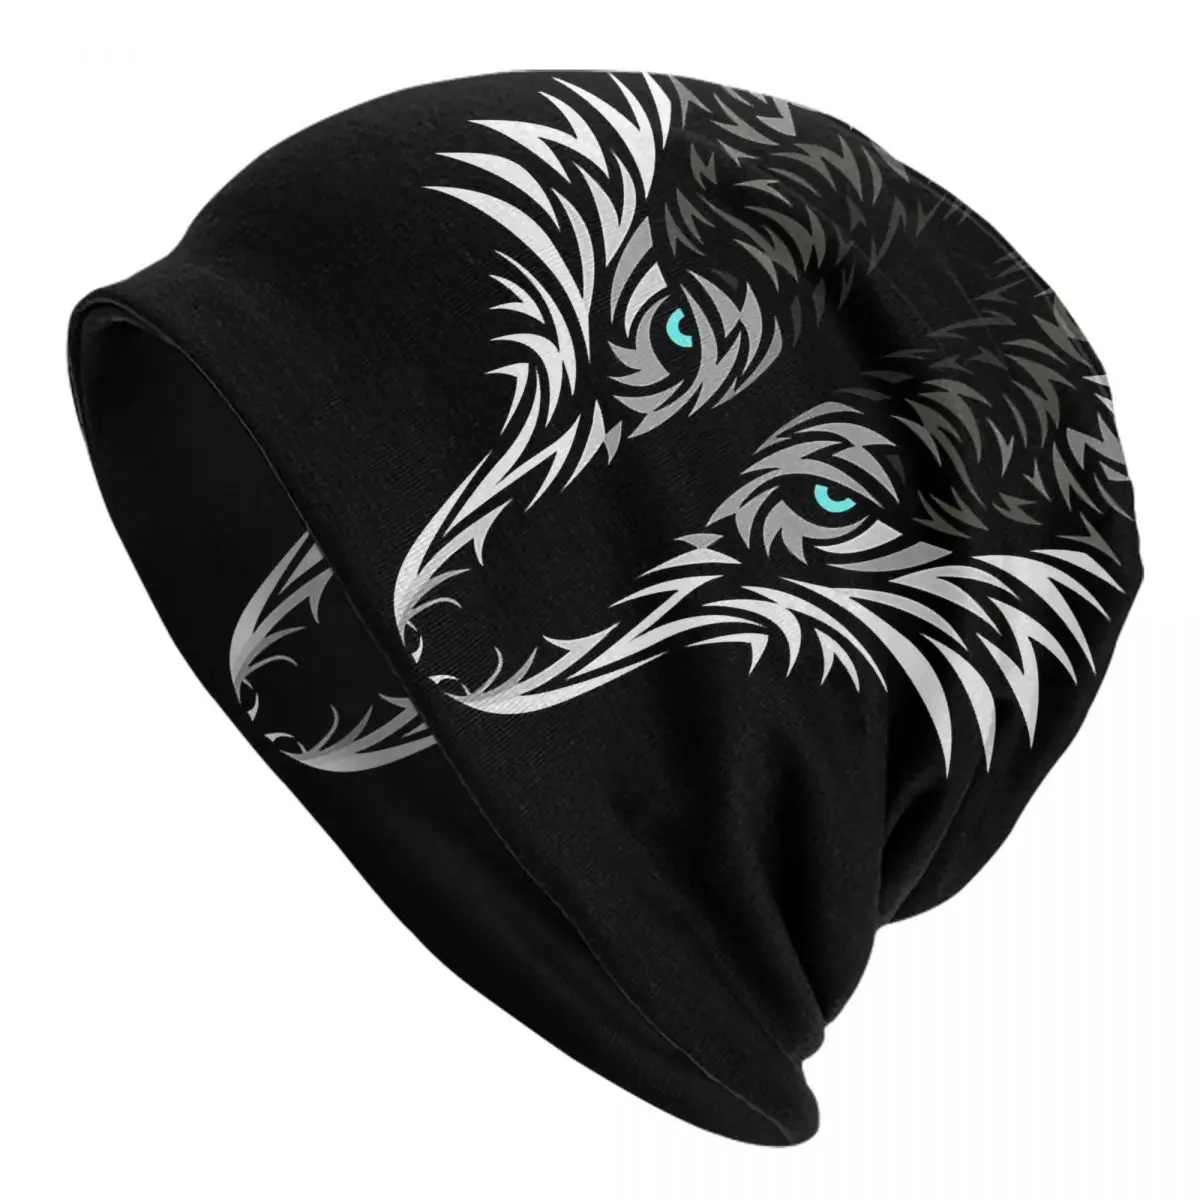 Tribal Wolf Face Caps Men Women Unisex Streetwear Winter Warm Knit Hat Adult funny Hats